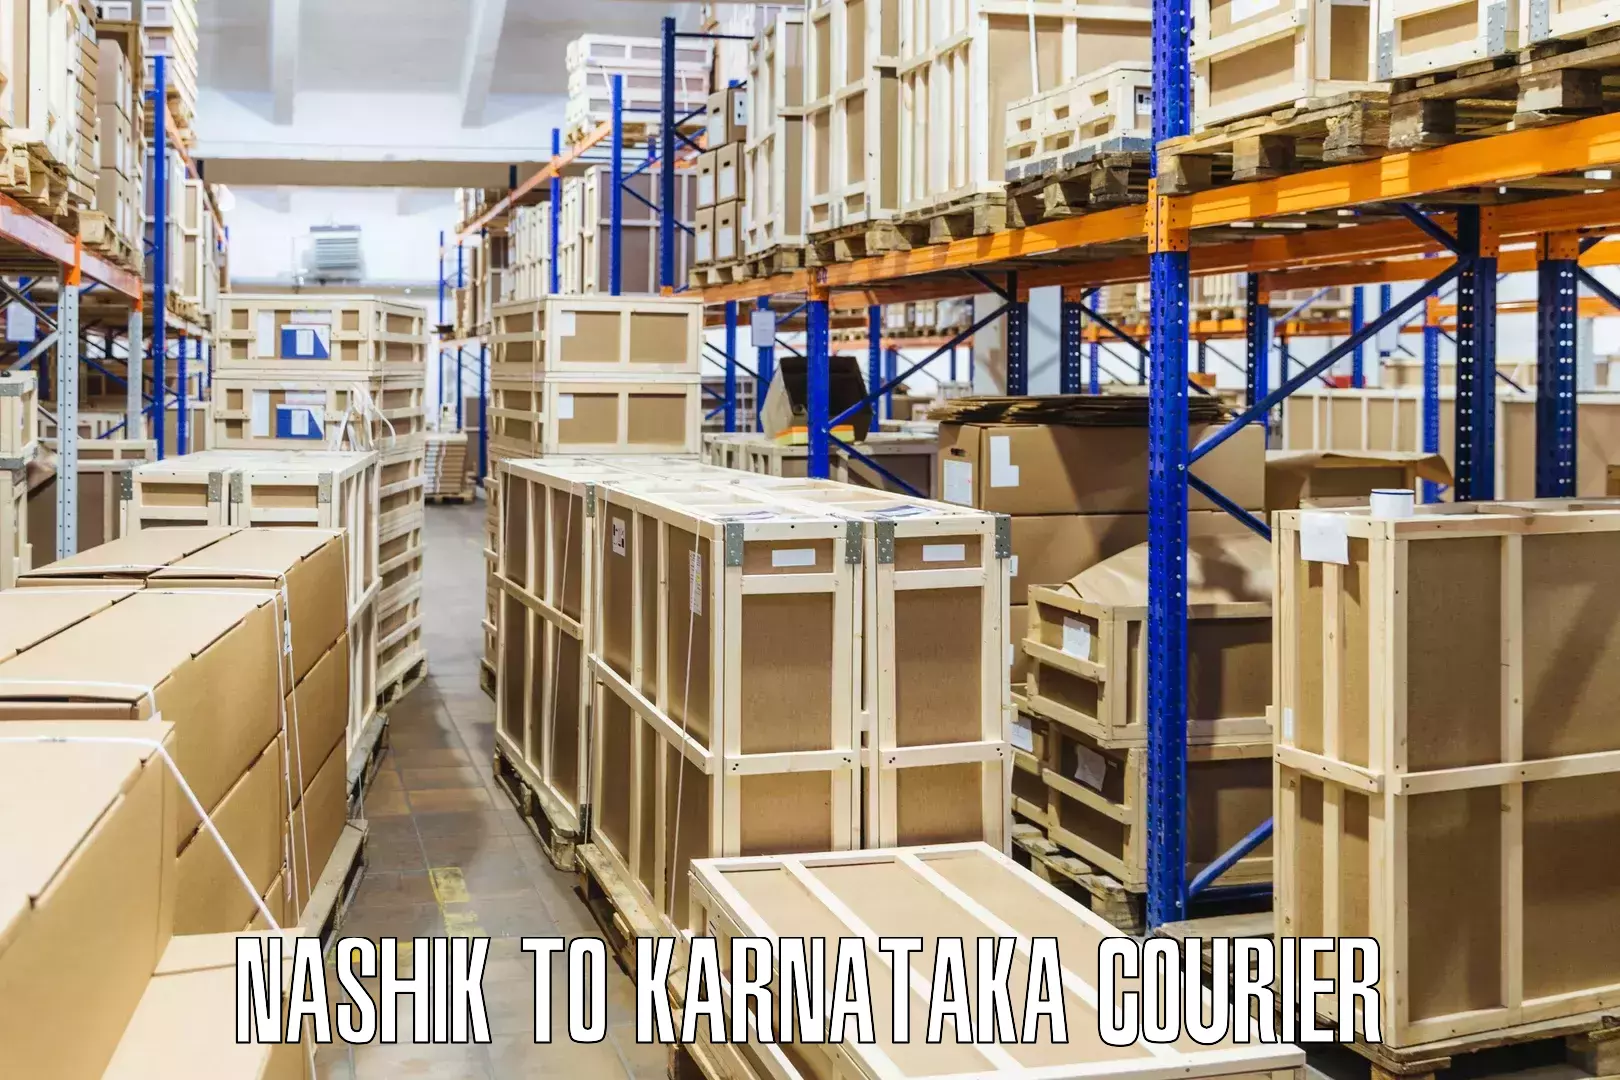 Efficient parcel delivery Nashik to Kollegal